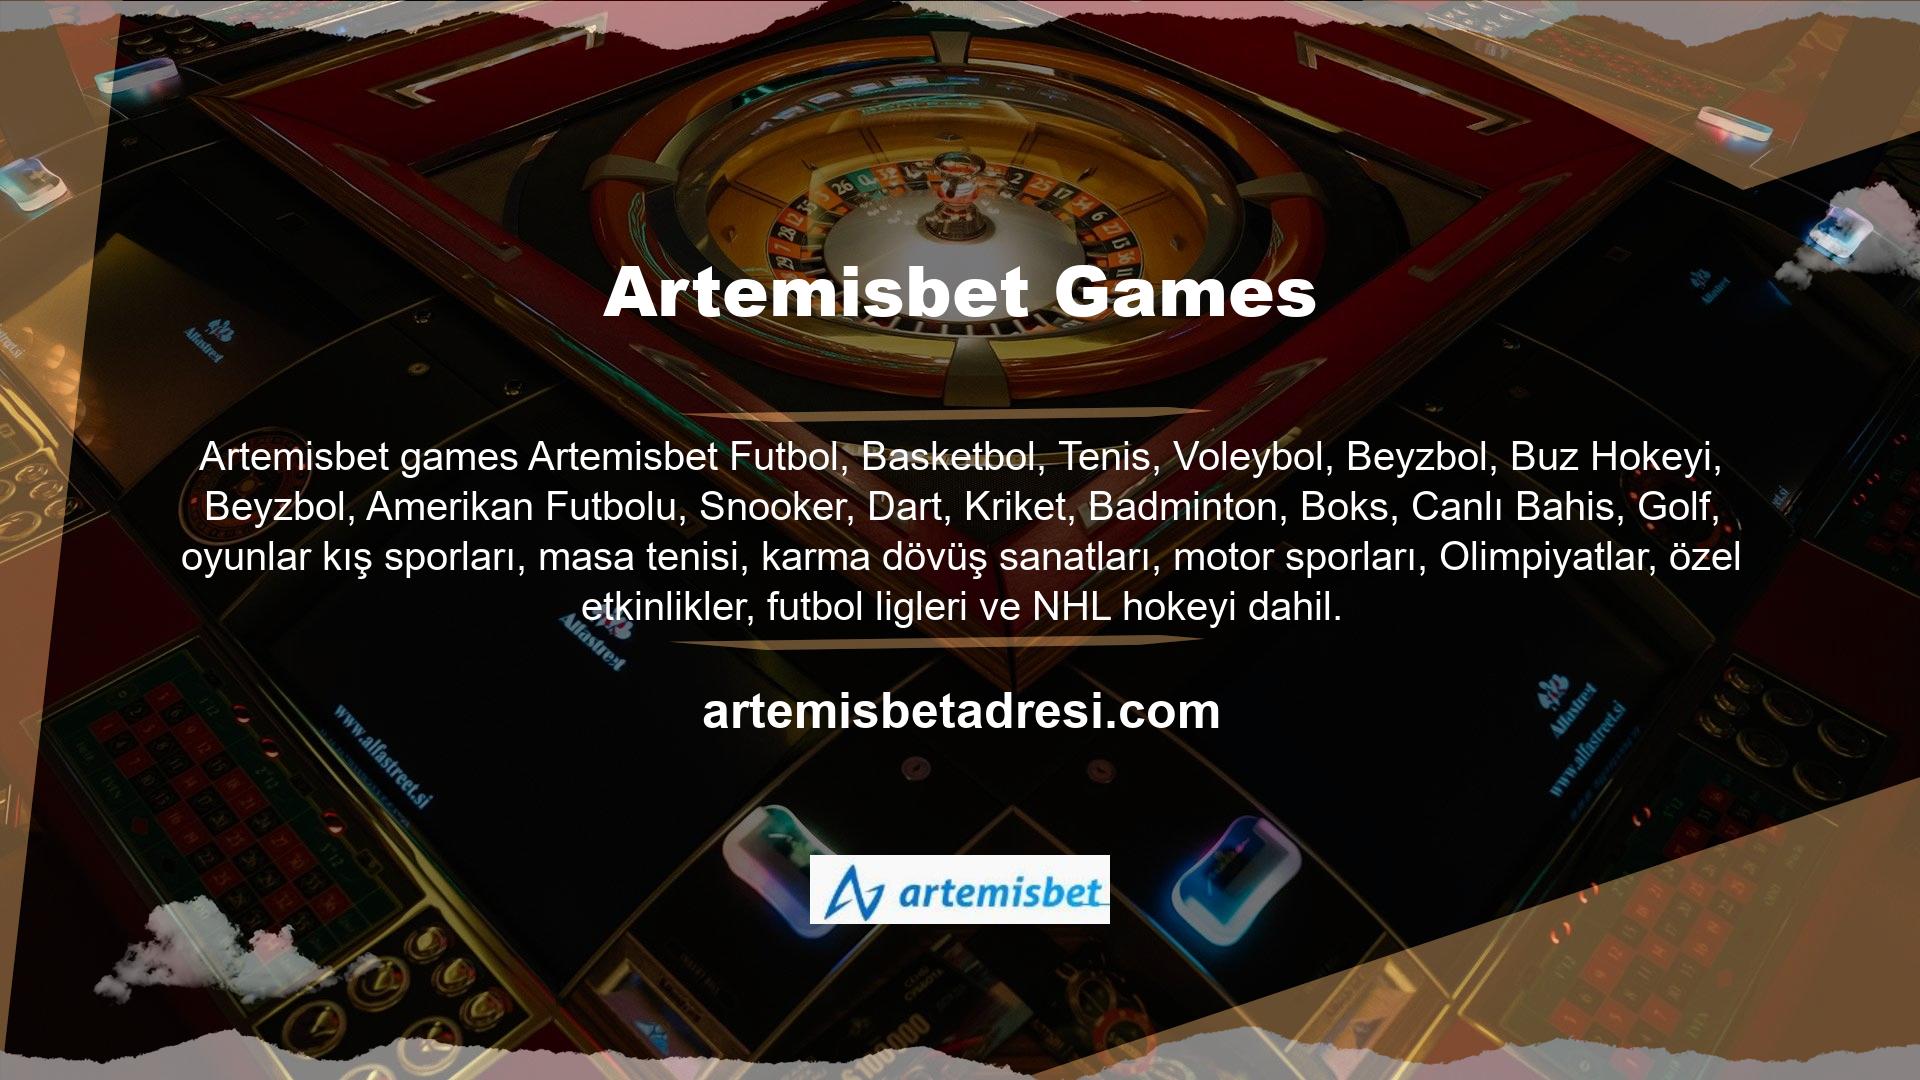 Diğer bahis siteleriyle karşılaştırıldığında Artemisbet içeriği, özellikle spor bahisleri söz konusu olduğunda, normalden biraz daha yüksek oranlarla oldukça kapsamlıdır